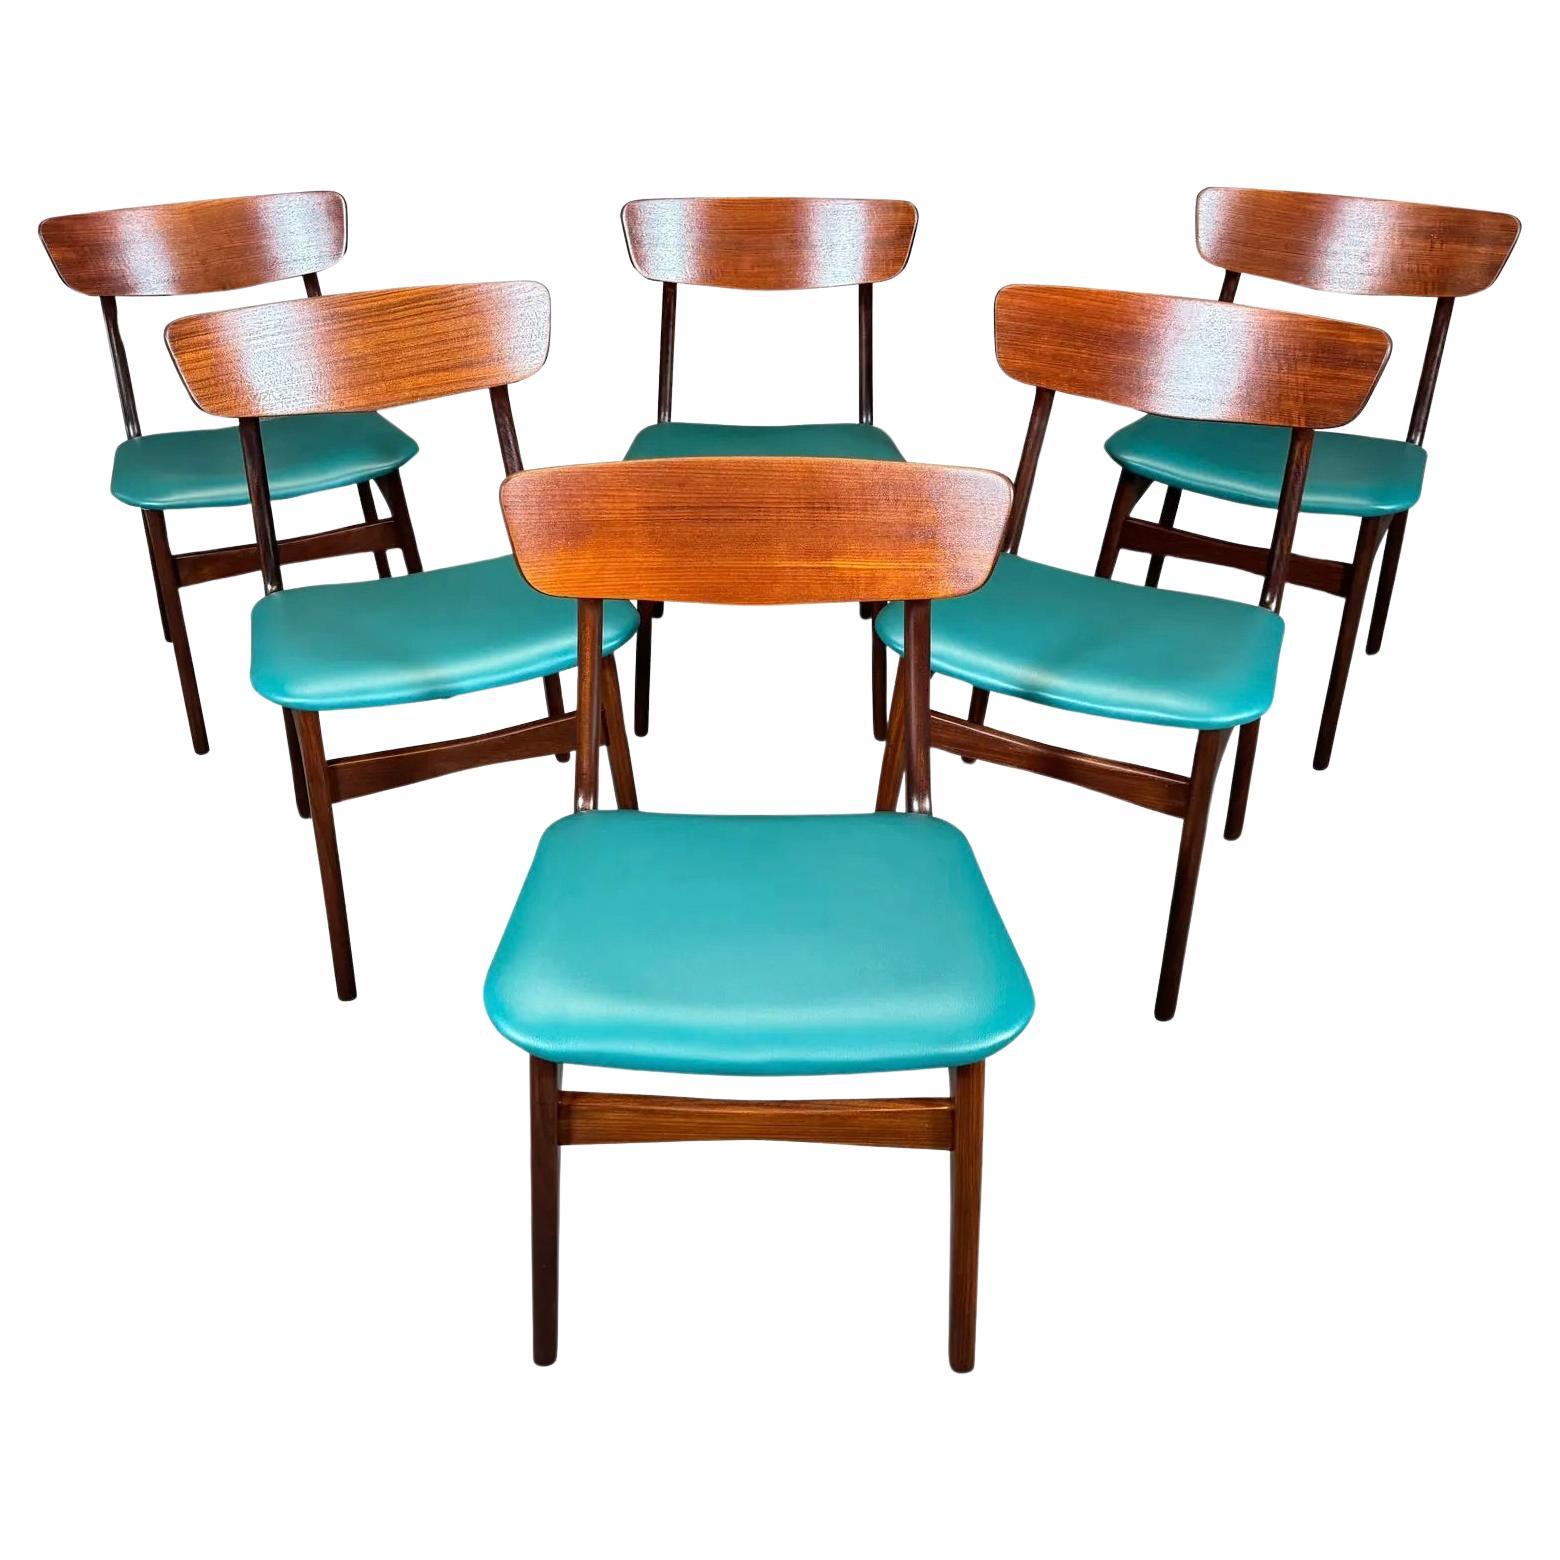 6 Vintage Danish Mid Century Modern Teak Dining Chairs by Schønning & Elgaard